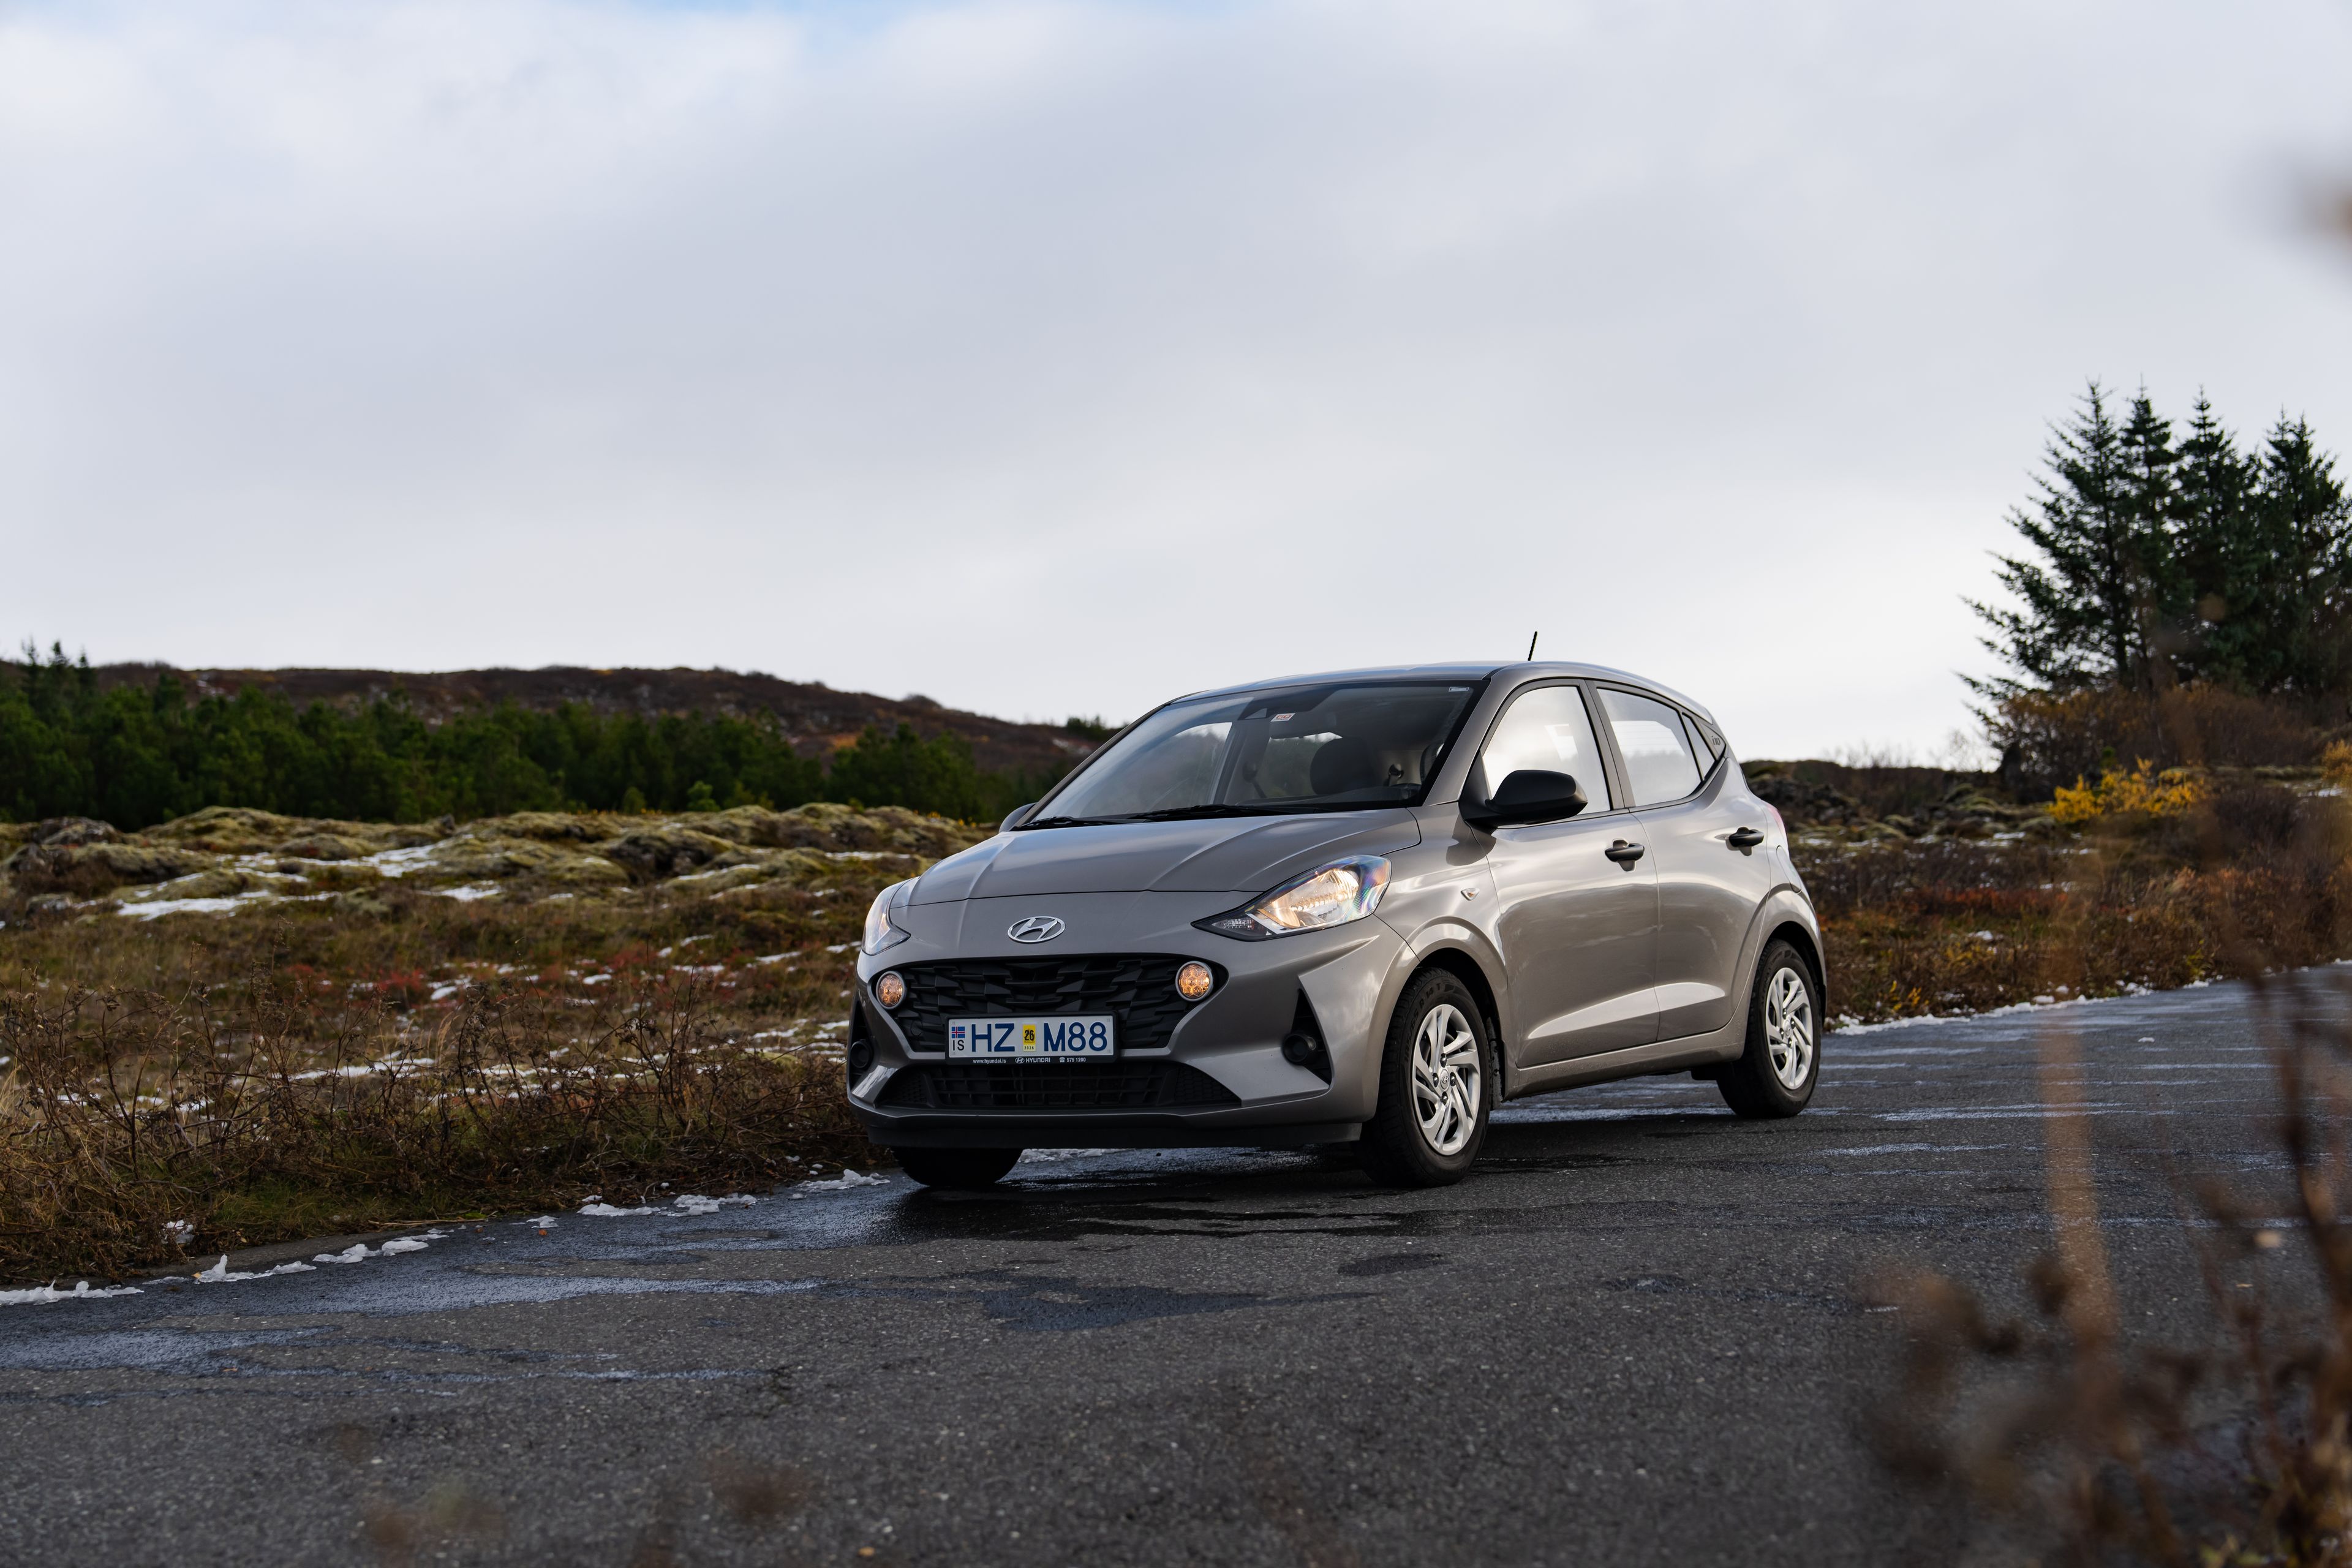 A Hyundai i10 rental car in Iceland, provided by Go Car Rental